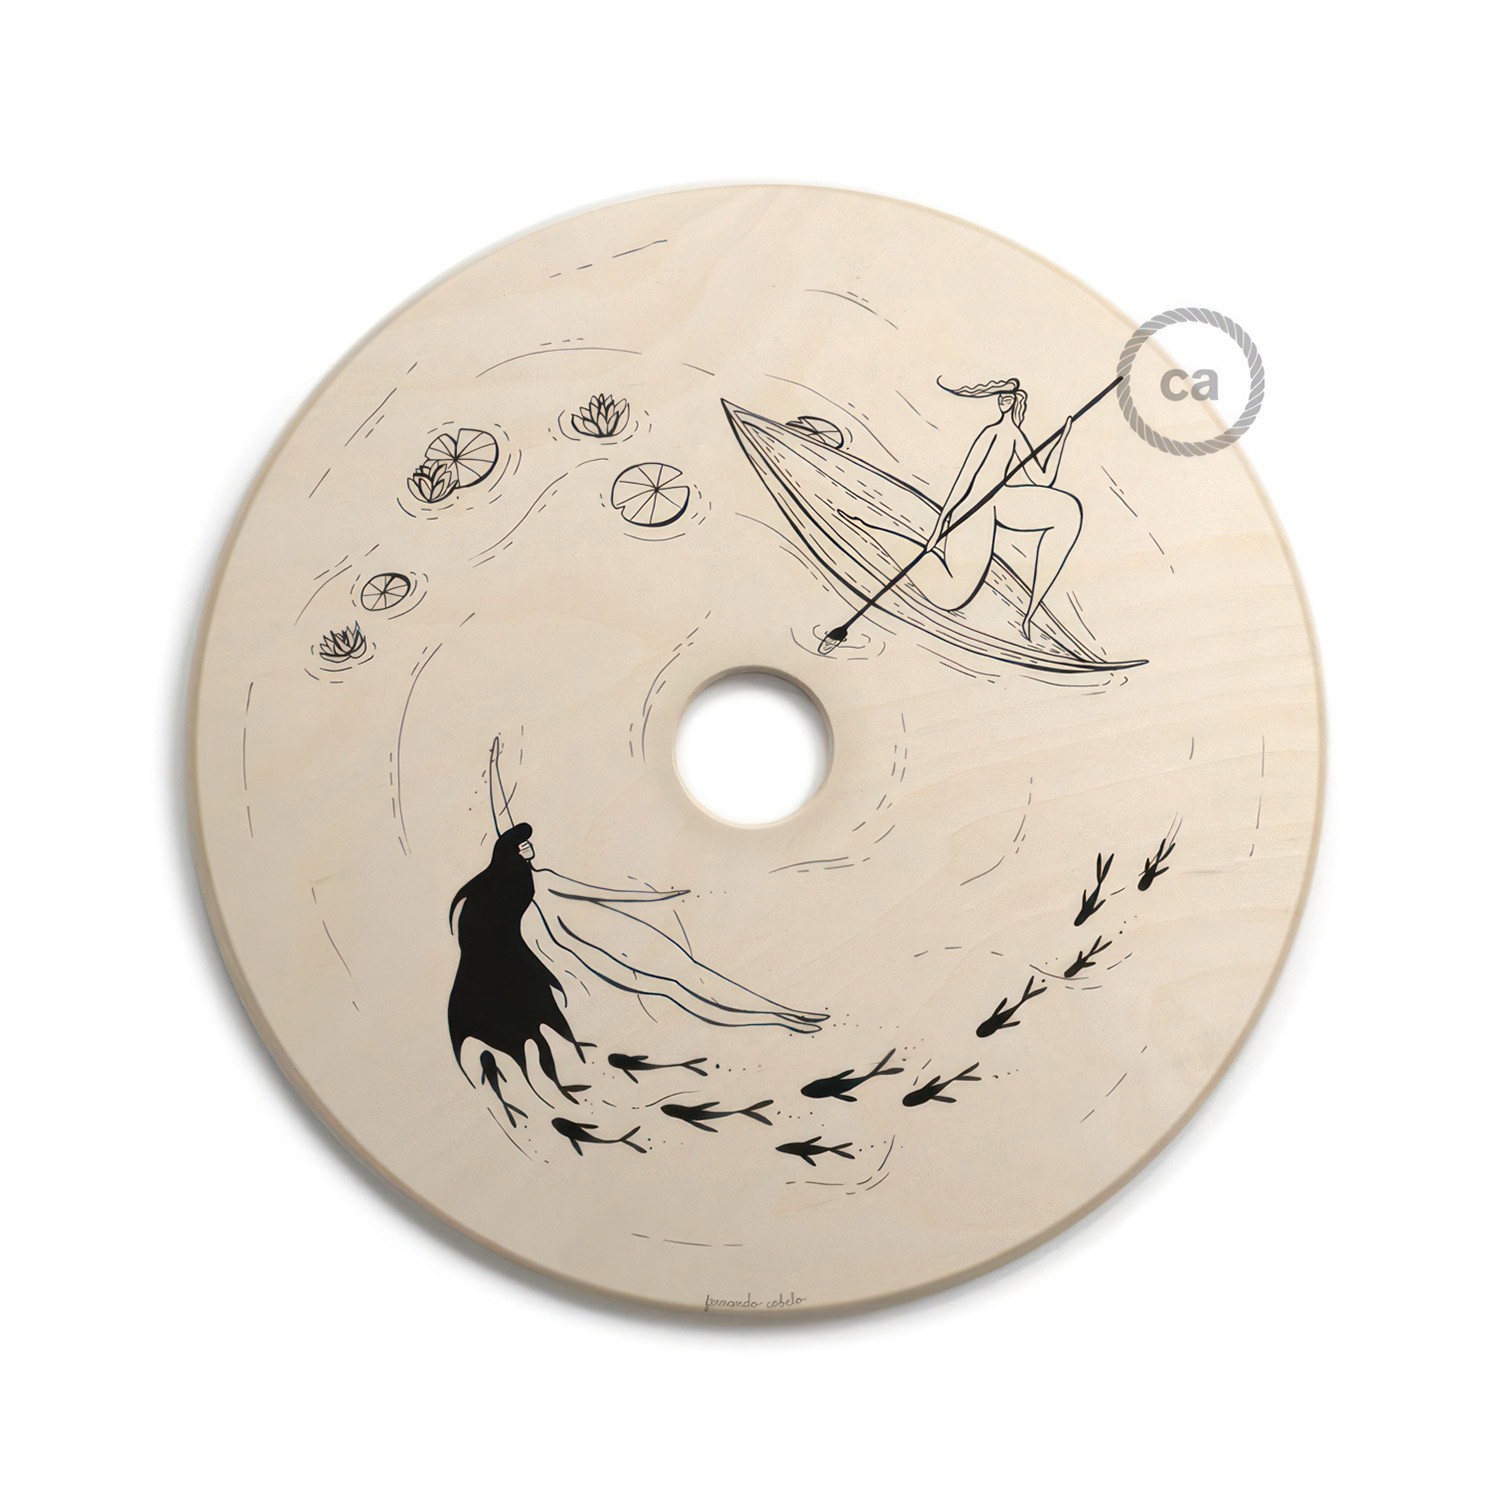 Abajur UFO em madeira ilustrado por vários artistas, dupla face - 33 cm de diâmetro